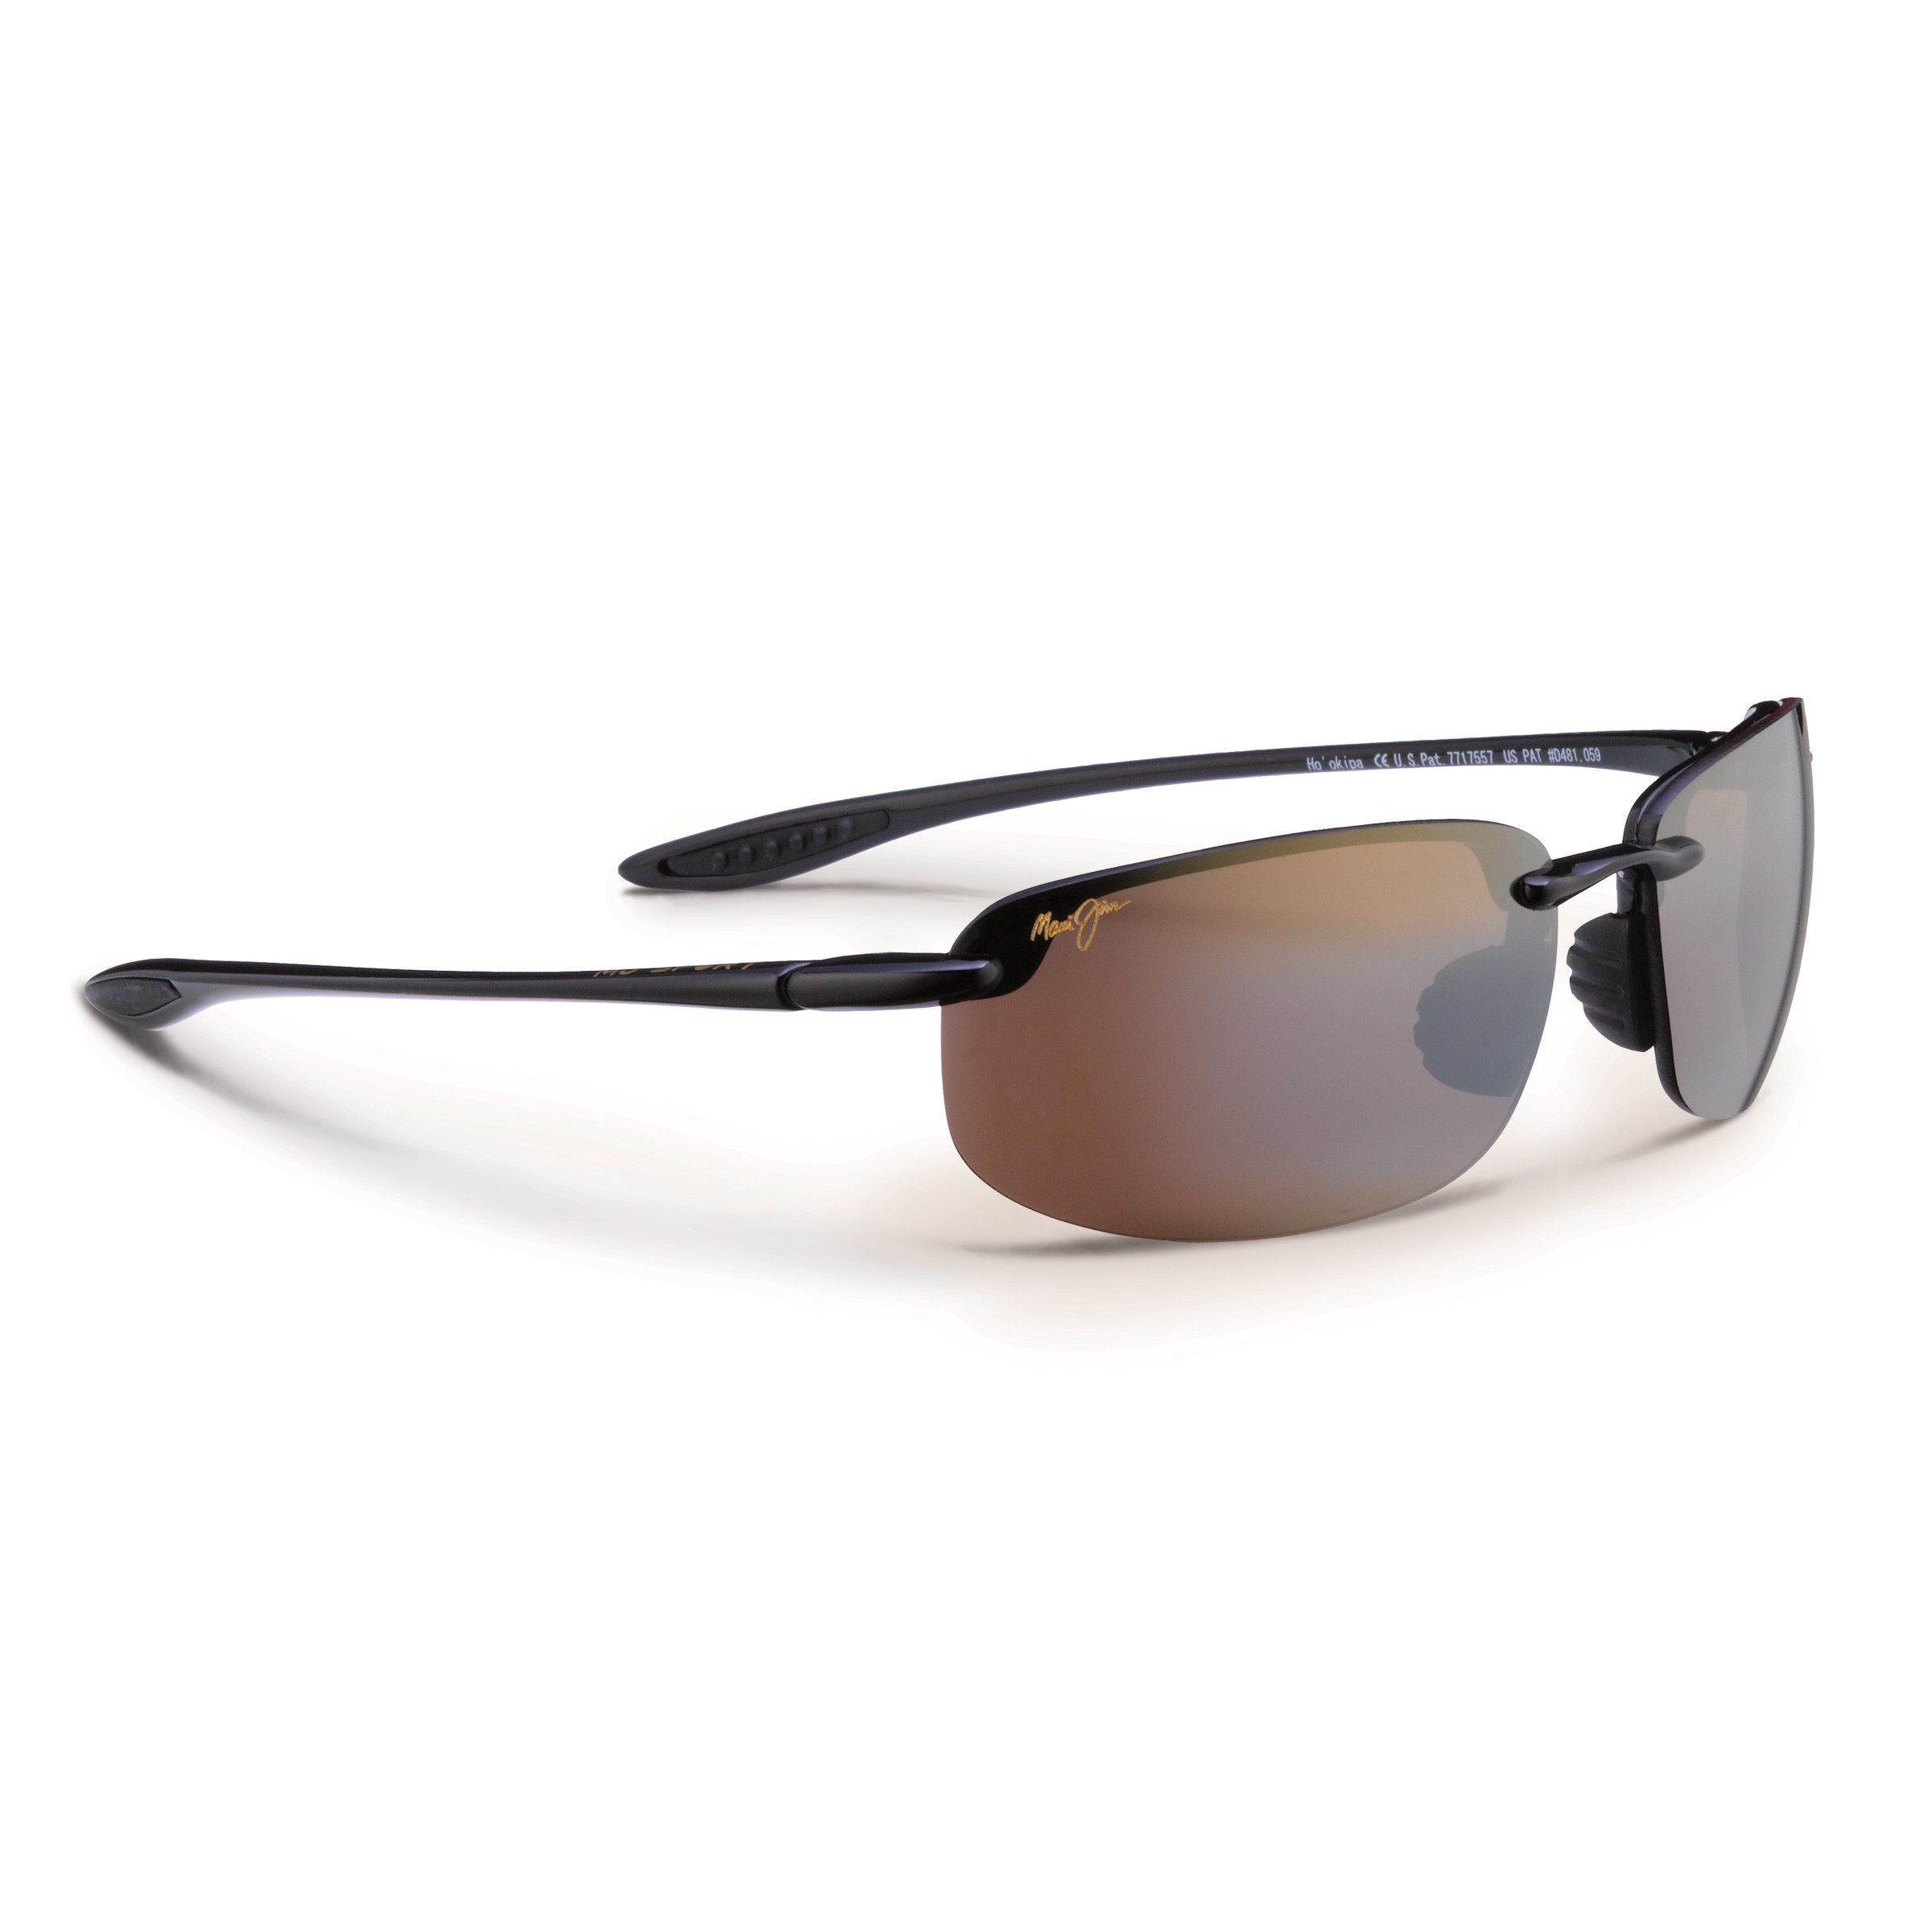 HO'OKIPA Oval Sunglasses 02 - size 64